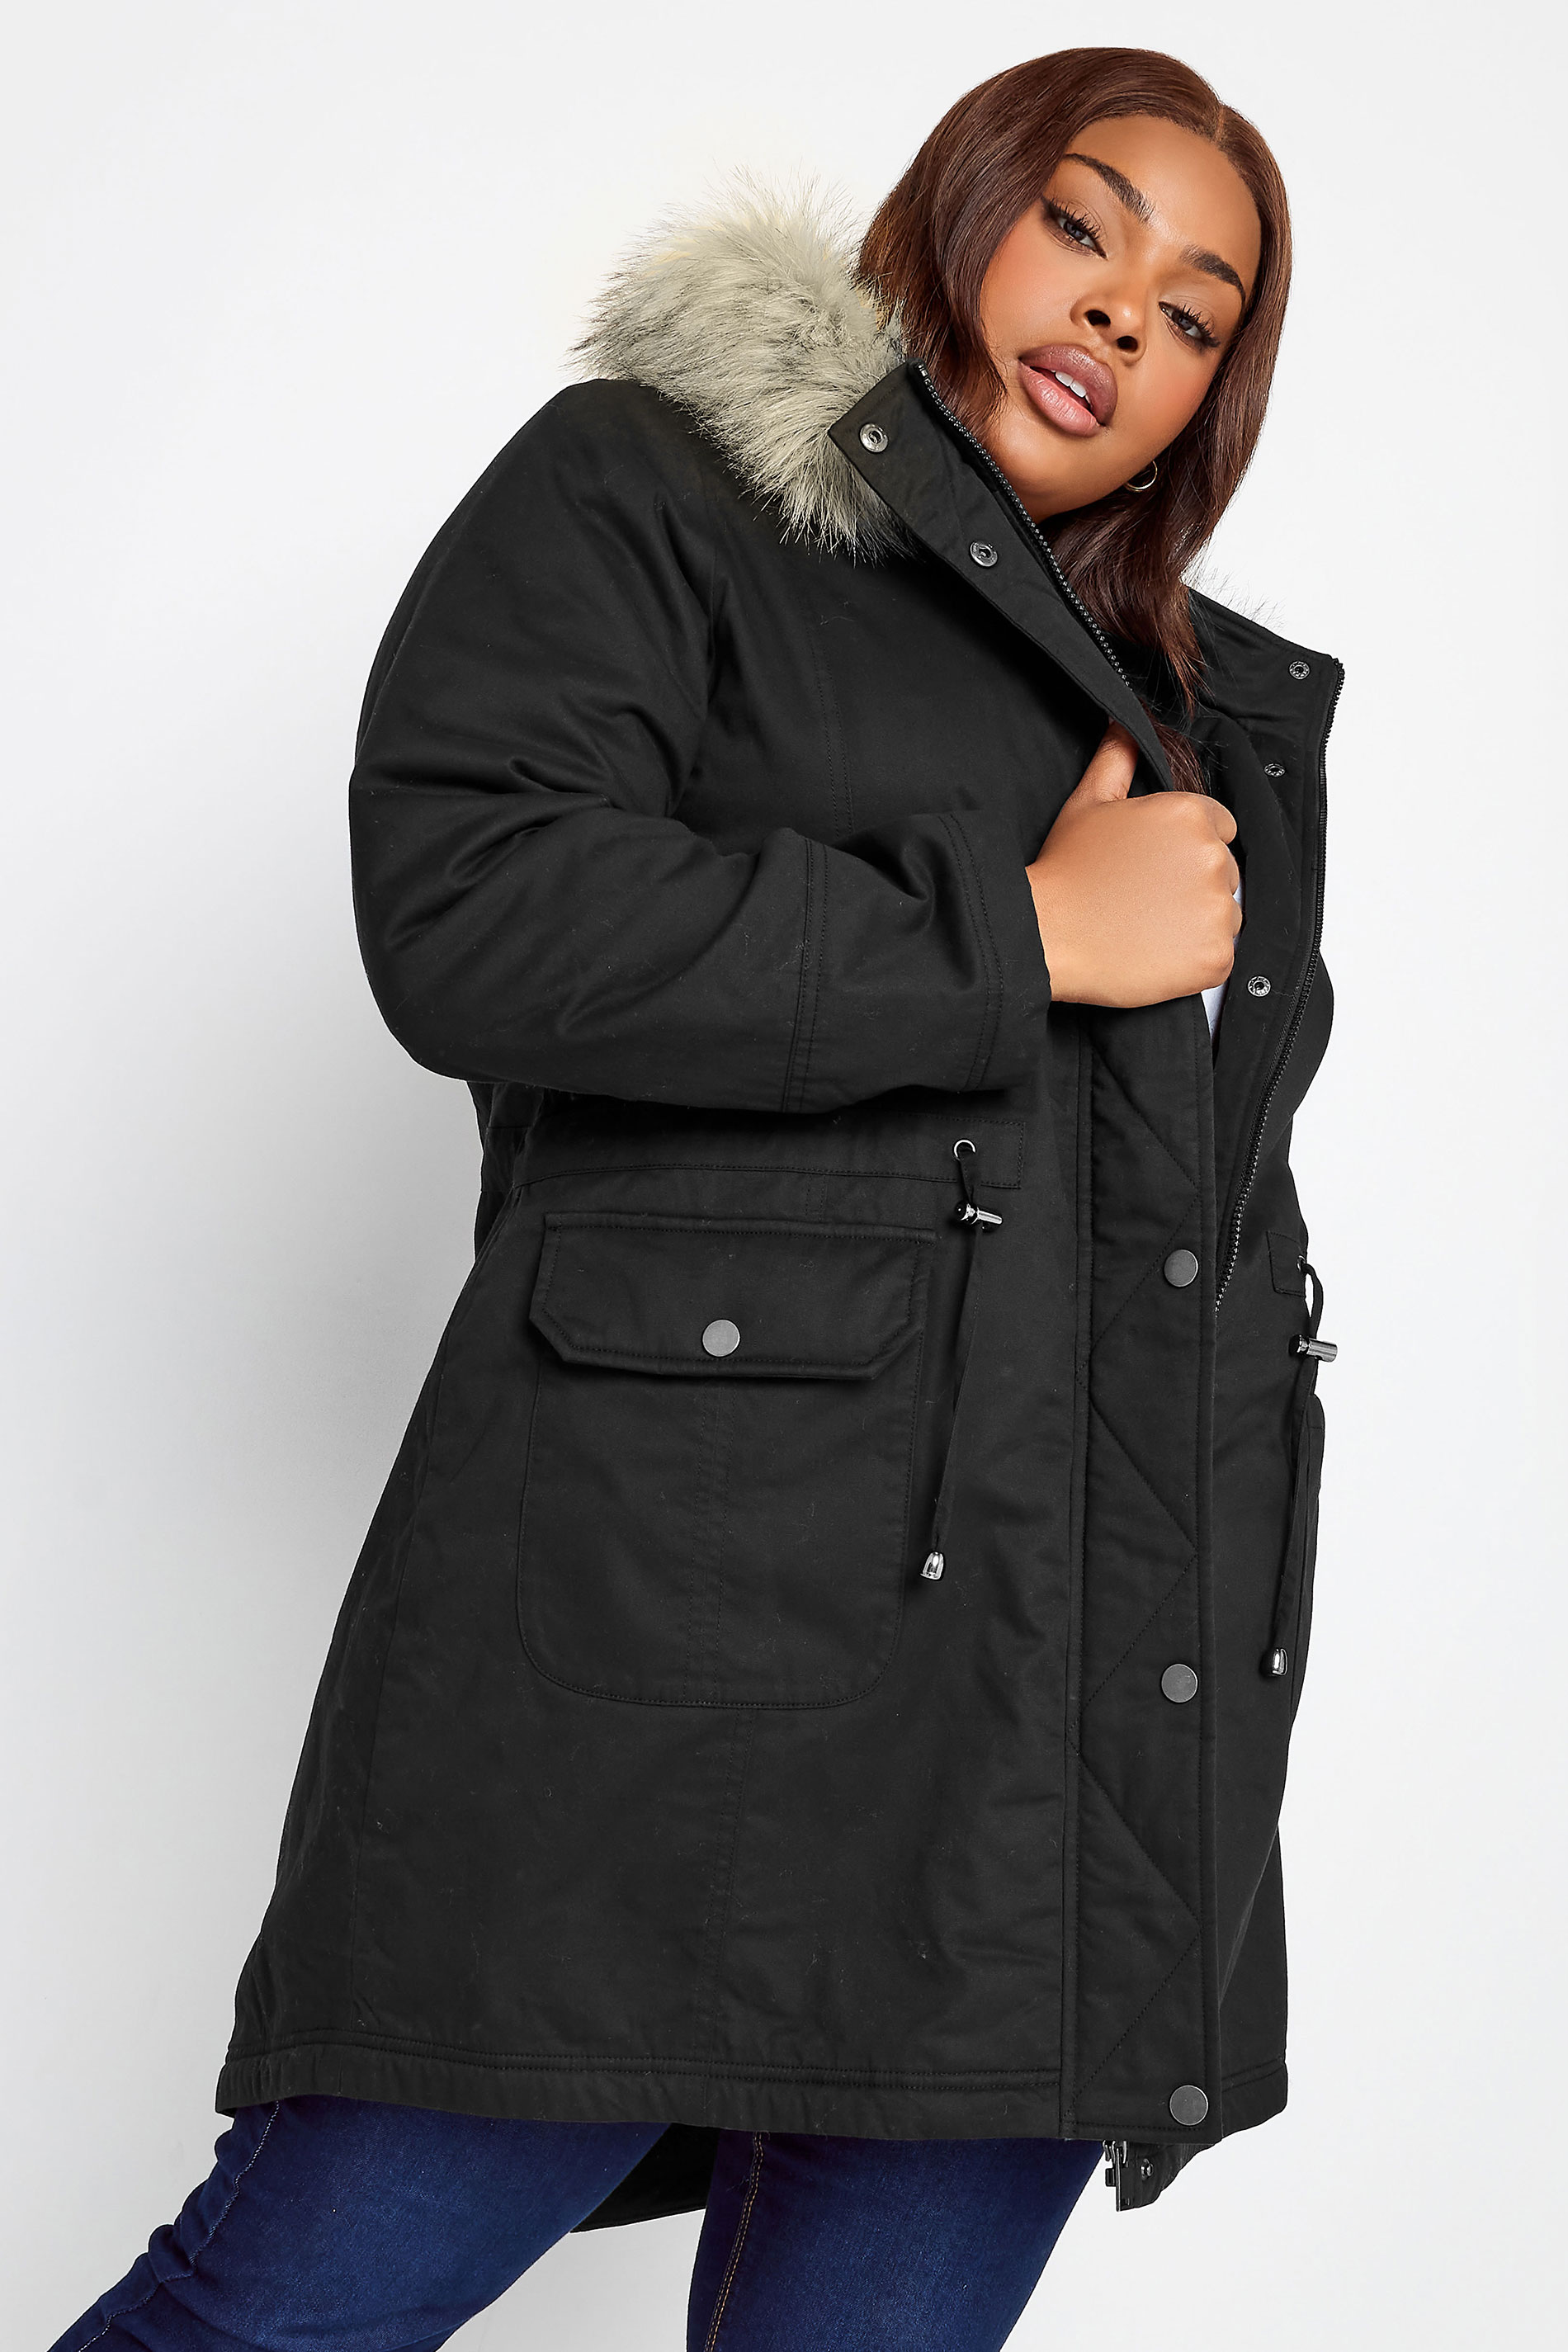 YOURS Curve Plus Size Black Faux Fur Hood Parka Coat | Yours Clothing  1